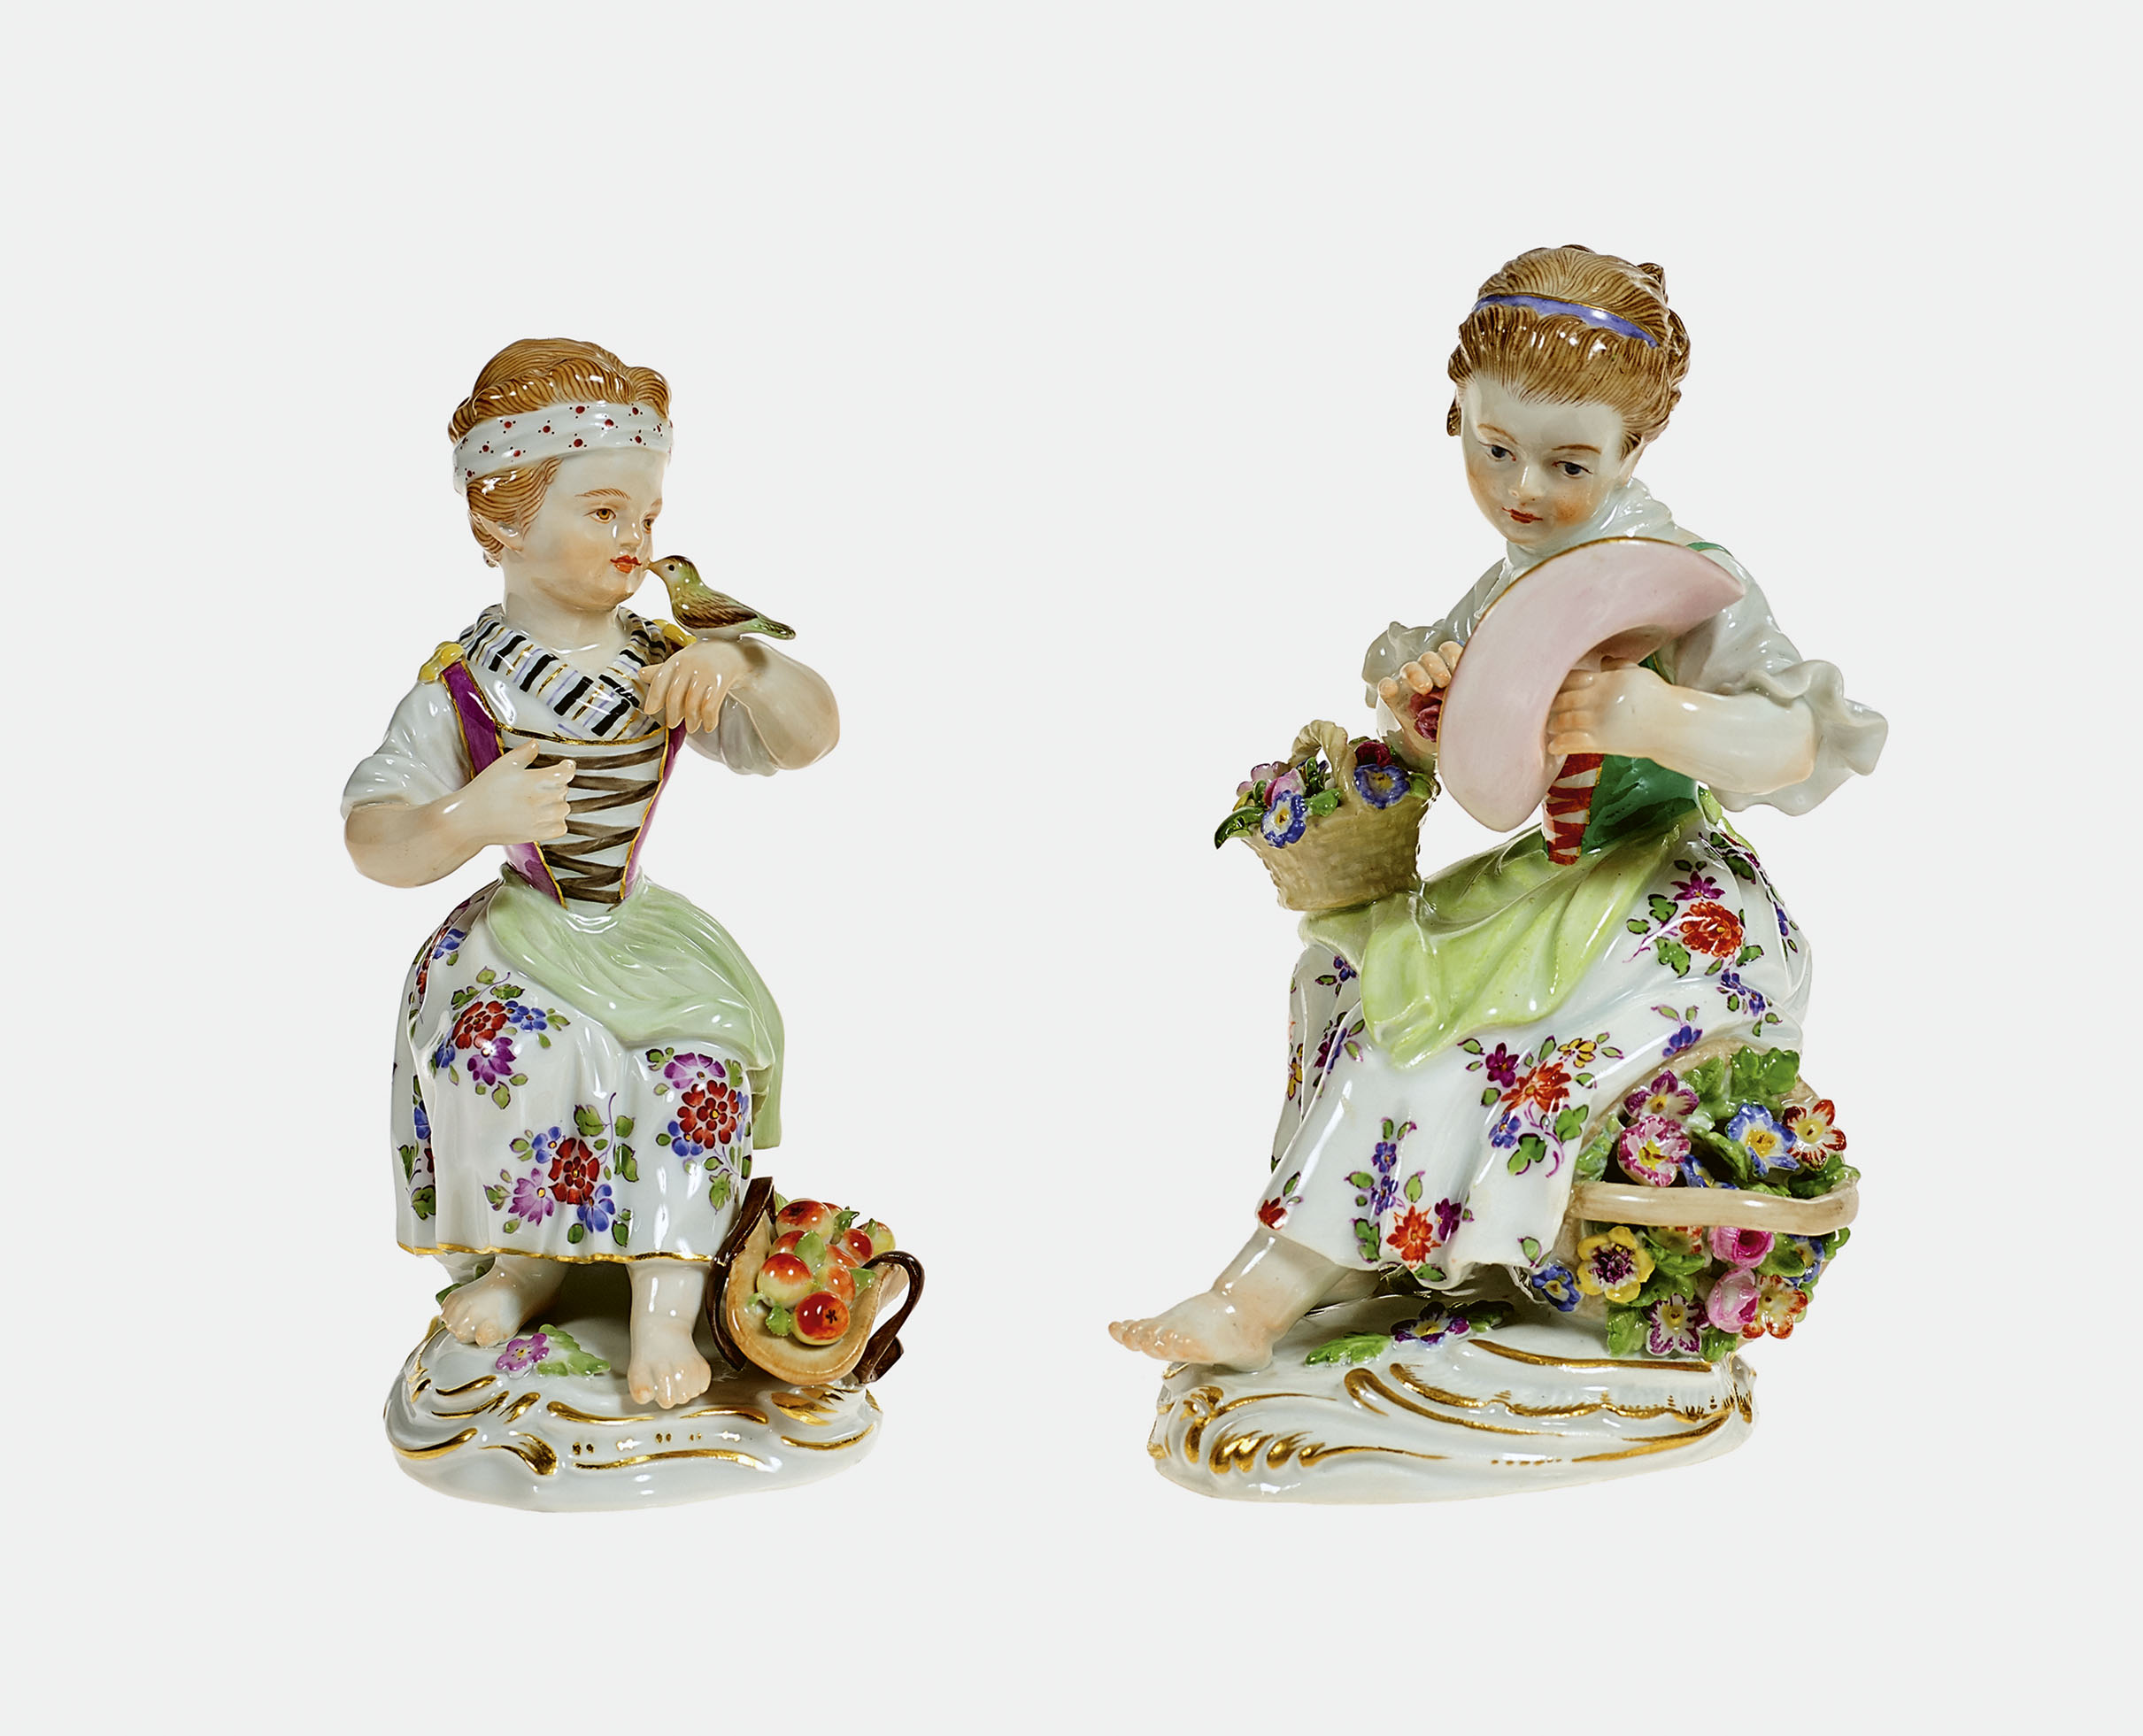 PAAR FIGURENMeissen, 1991 bzw. 2001 (Staatliche Porzellan Manufaktur).1. "Gärtnerkind mit zwei